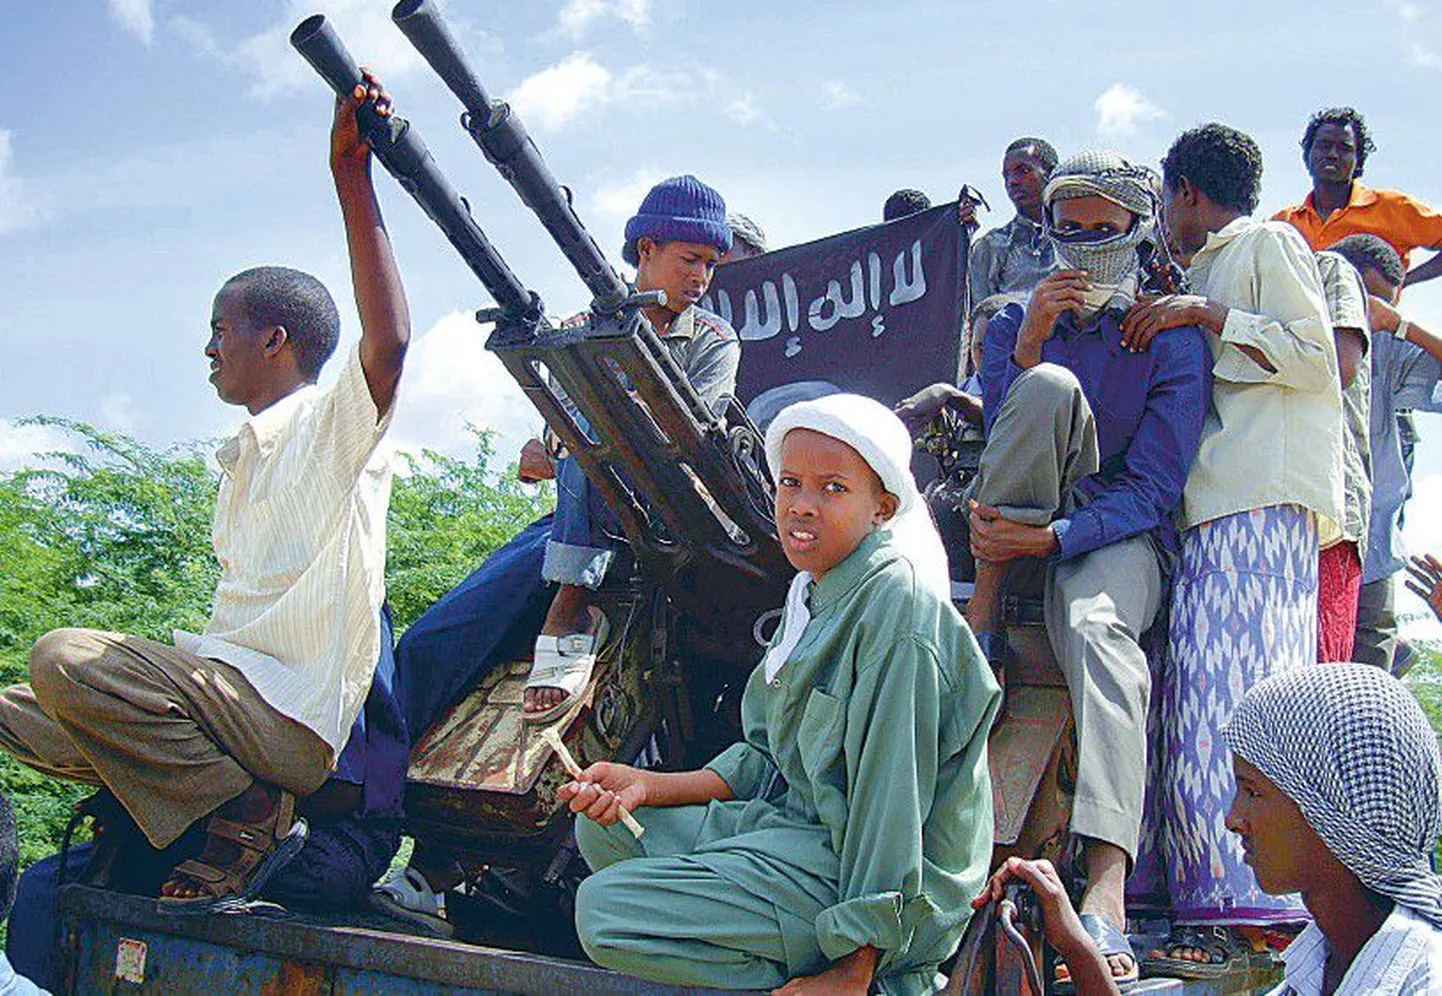 Islamistlike võitlejate patrull Somaalia pealinnas Mogadishus. Sellest maailma seadusetuimast riigist leiab kõikvõimalikke hädasid alates piraatidest ja lõpetades lapssõduritega.